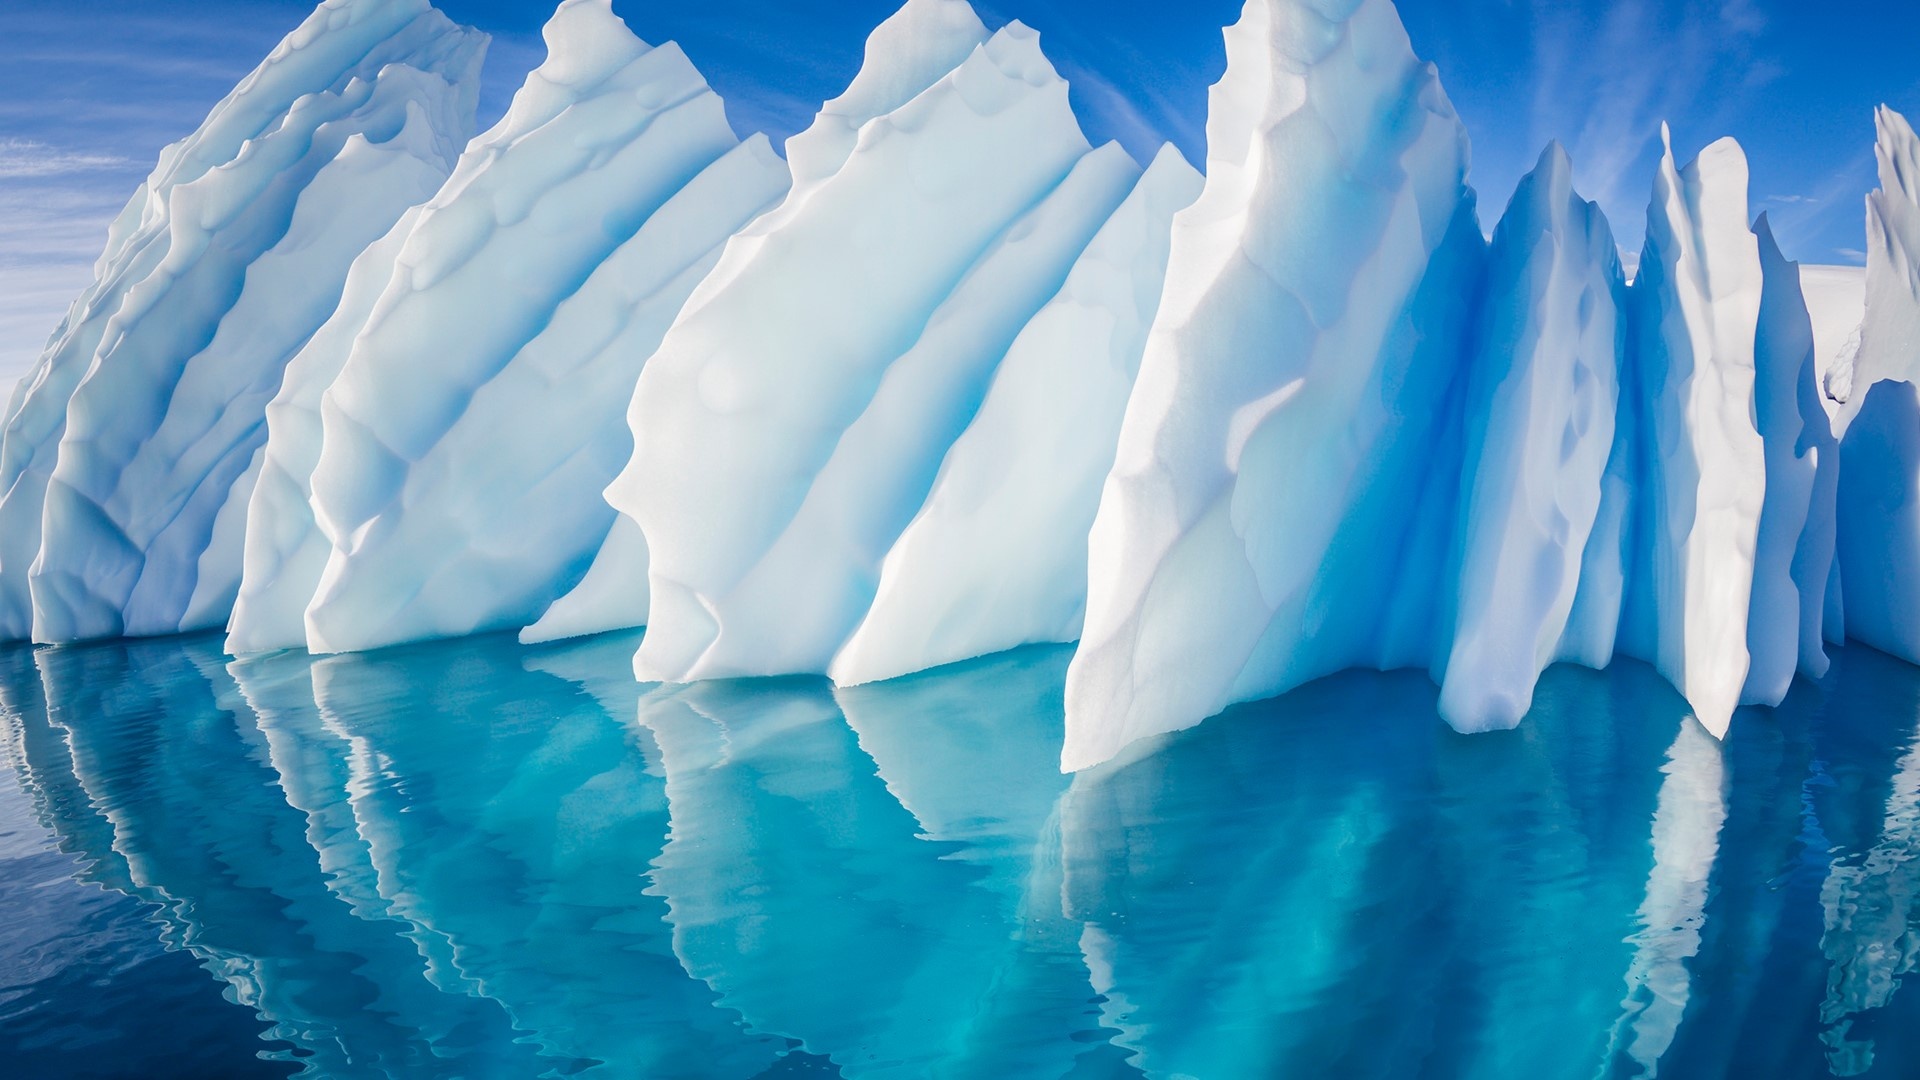 Paradise Harbor, Antarctic Peninsula, Windows 10 spotlight images, Iceberg, 1920x1080 Full HD Desktop